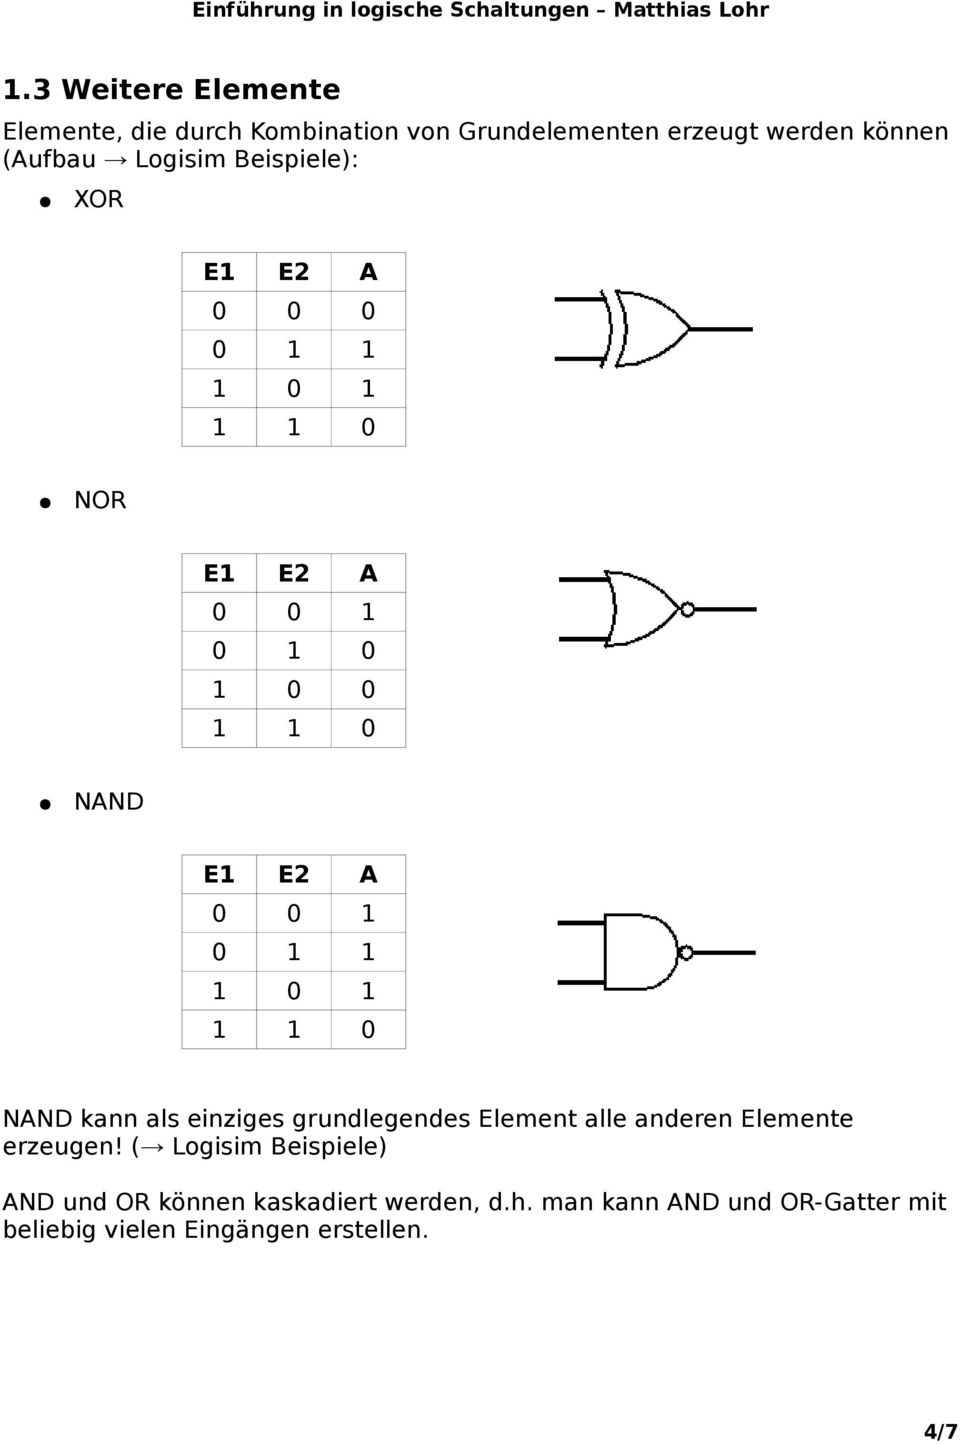 NAND kann als einziges grundlegendes Element alle anderen Elemente erzeugen!